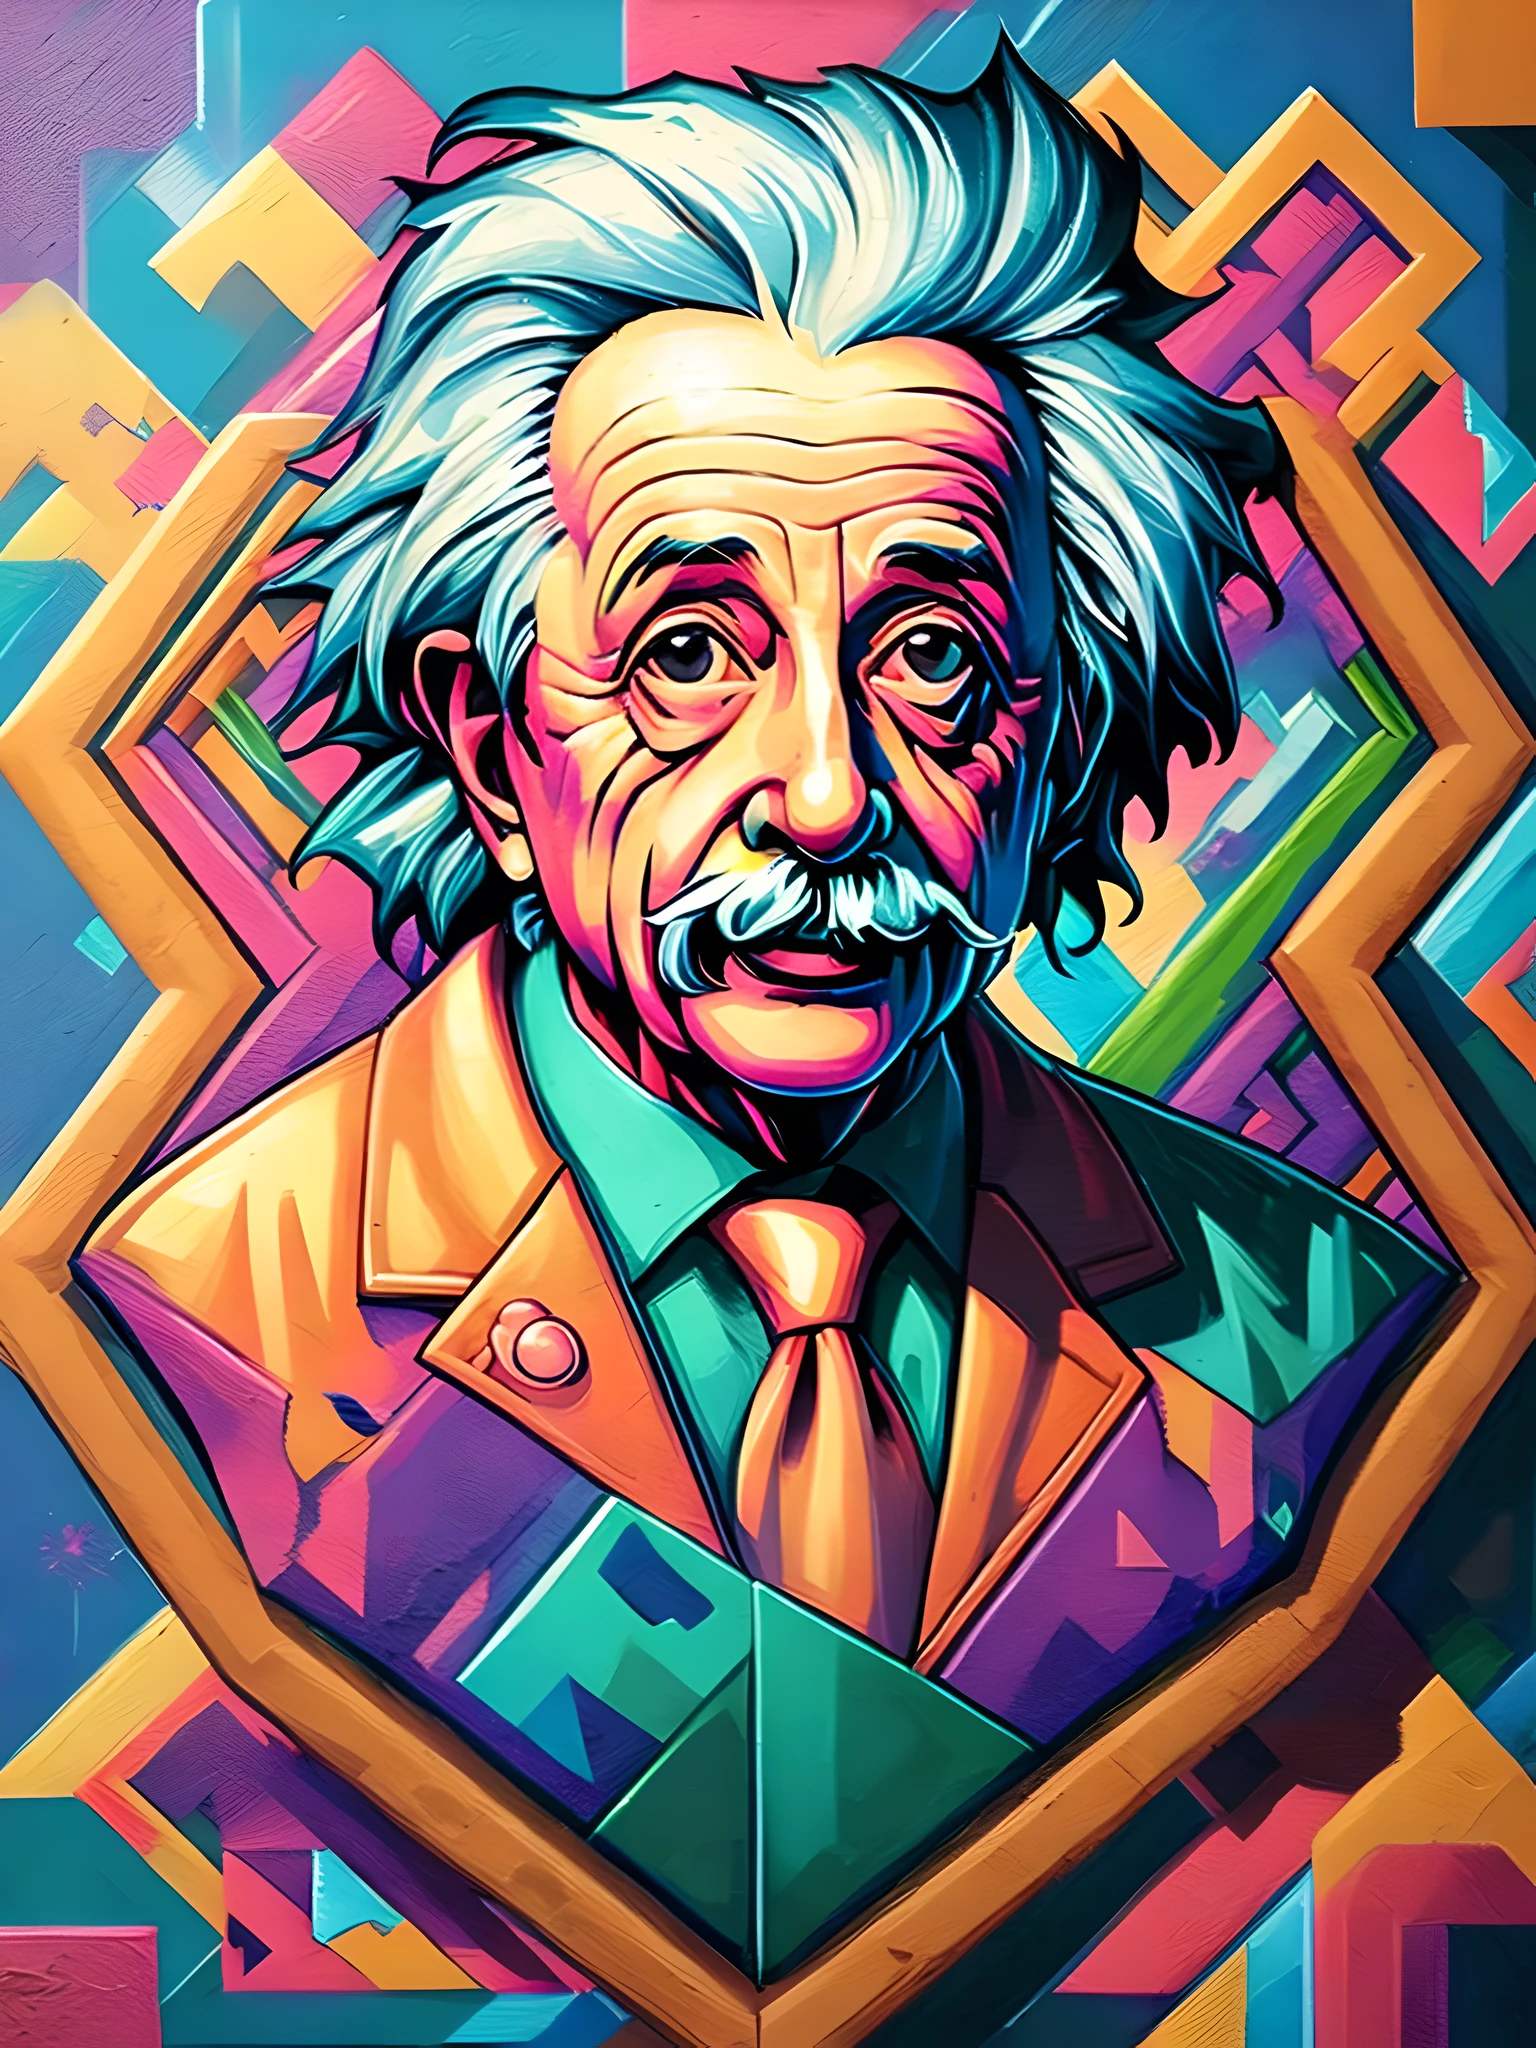 (최고의 품질),(걸작),(매우 상세한),(매우 상세한),(매우 상세한),중심, 아이소메트릭, 벽화, 낙서, 구성, 모양, 패턴, vector art ready to print highly detailed 낙서 illustration of Einstein